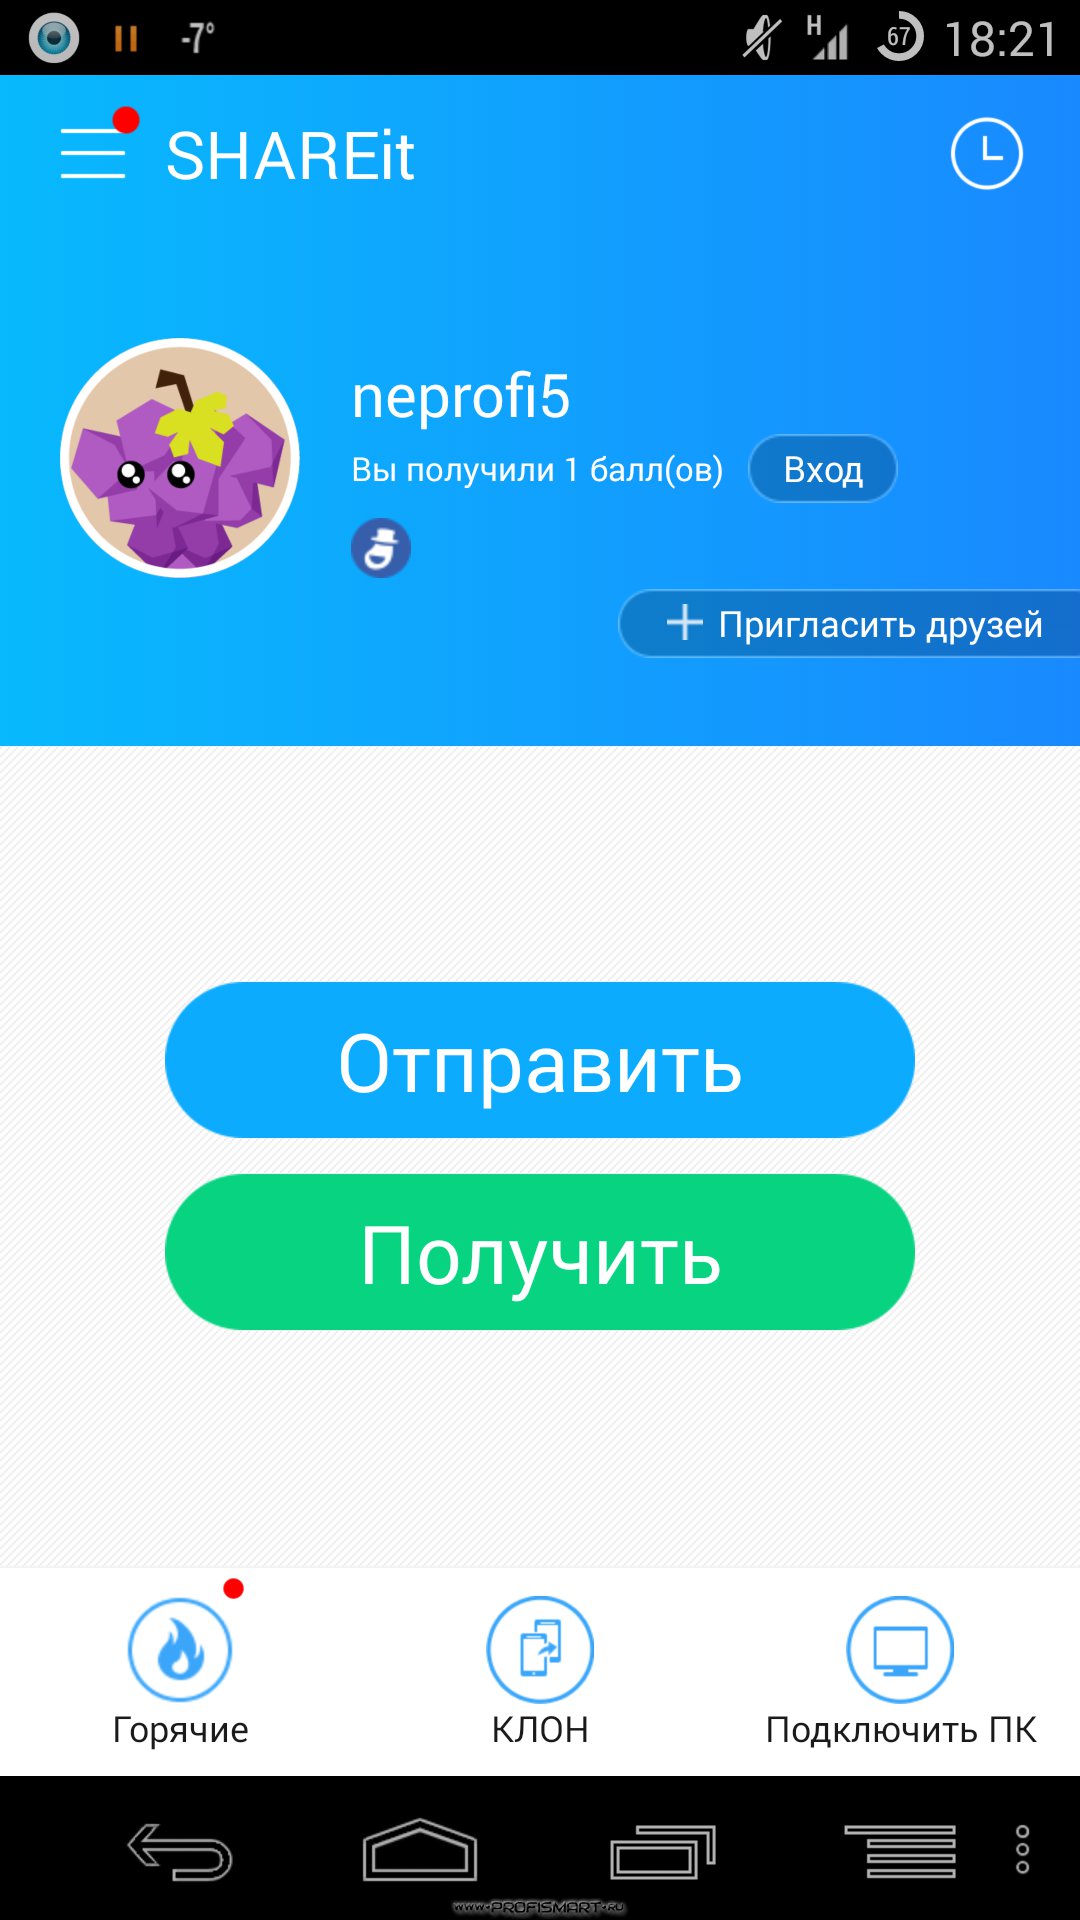 Телеграмм скачать бесплатно на телефон на русском языке без вирусов приложение андроид русском языке фото 109